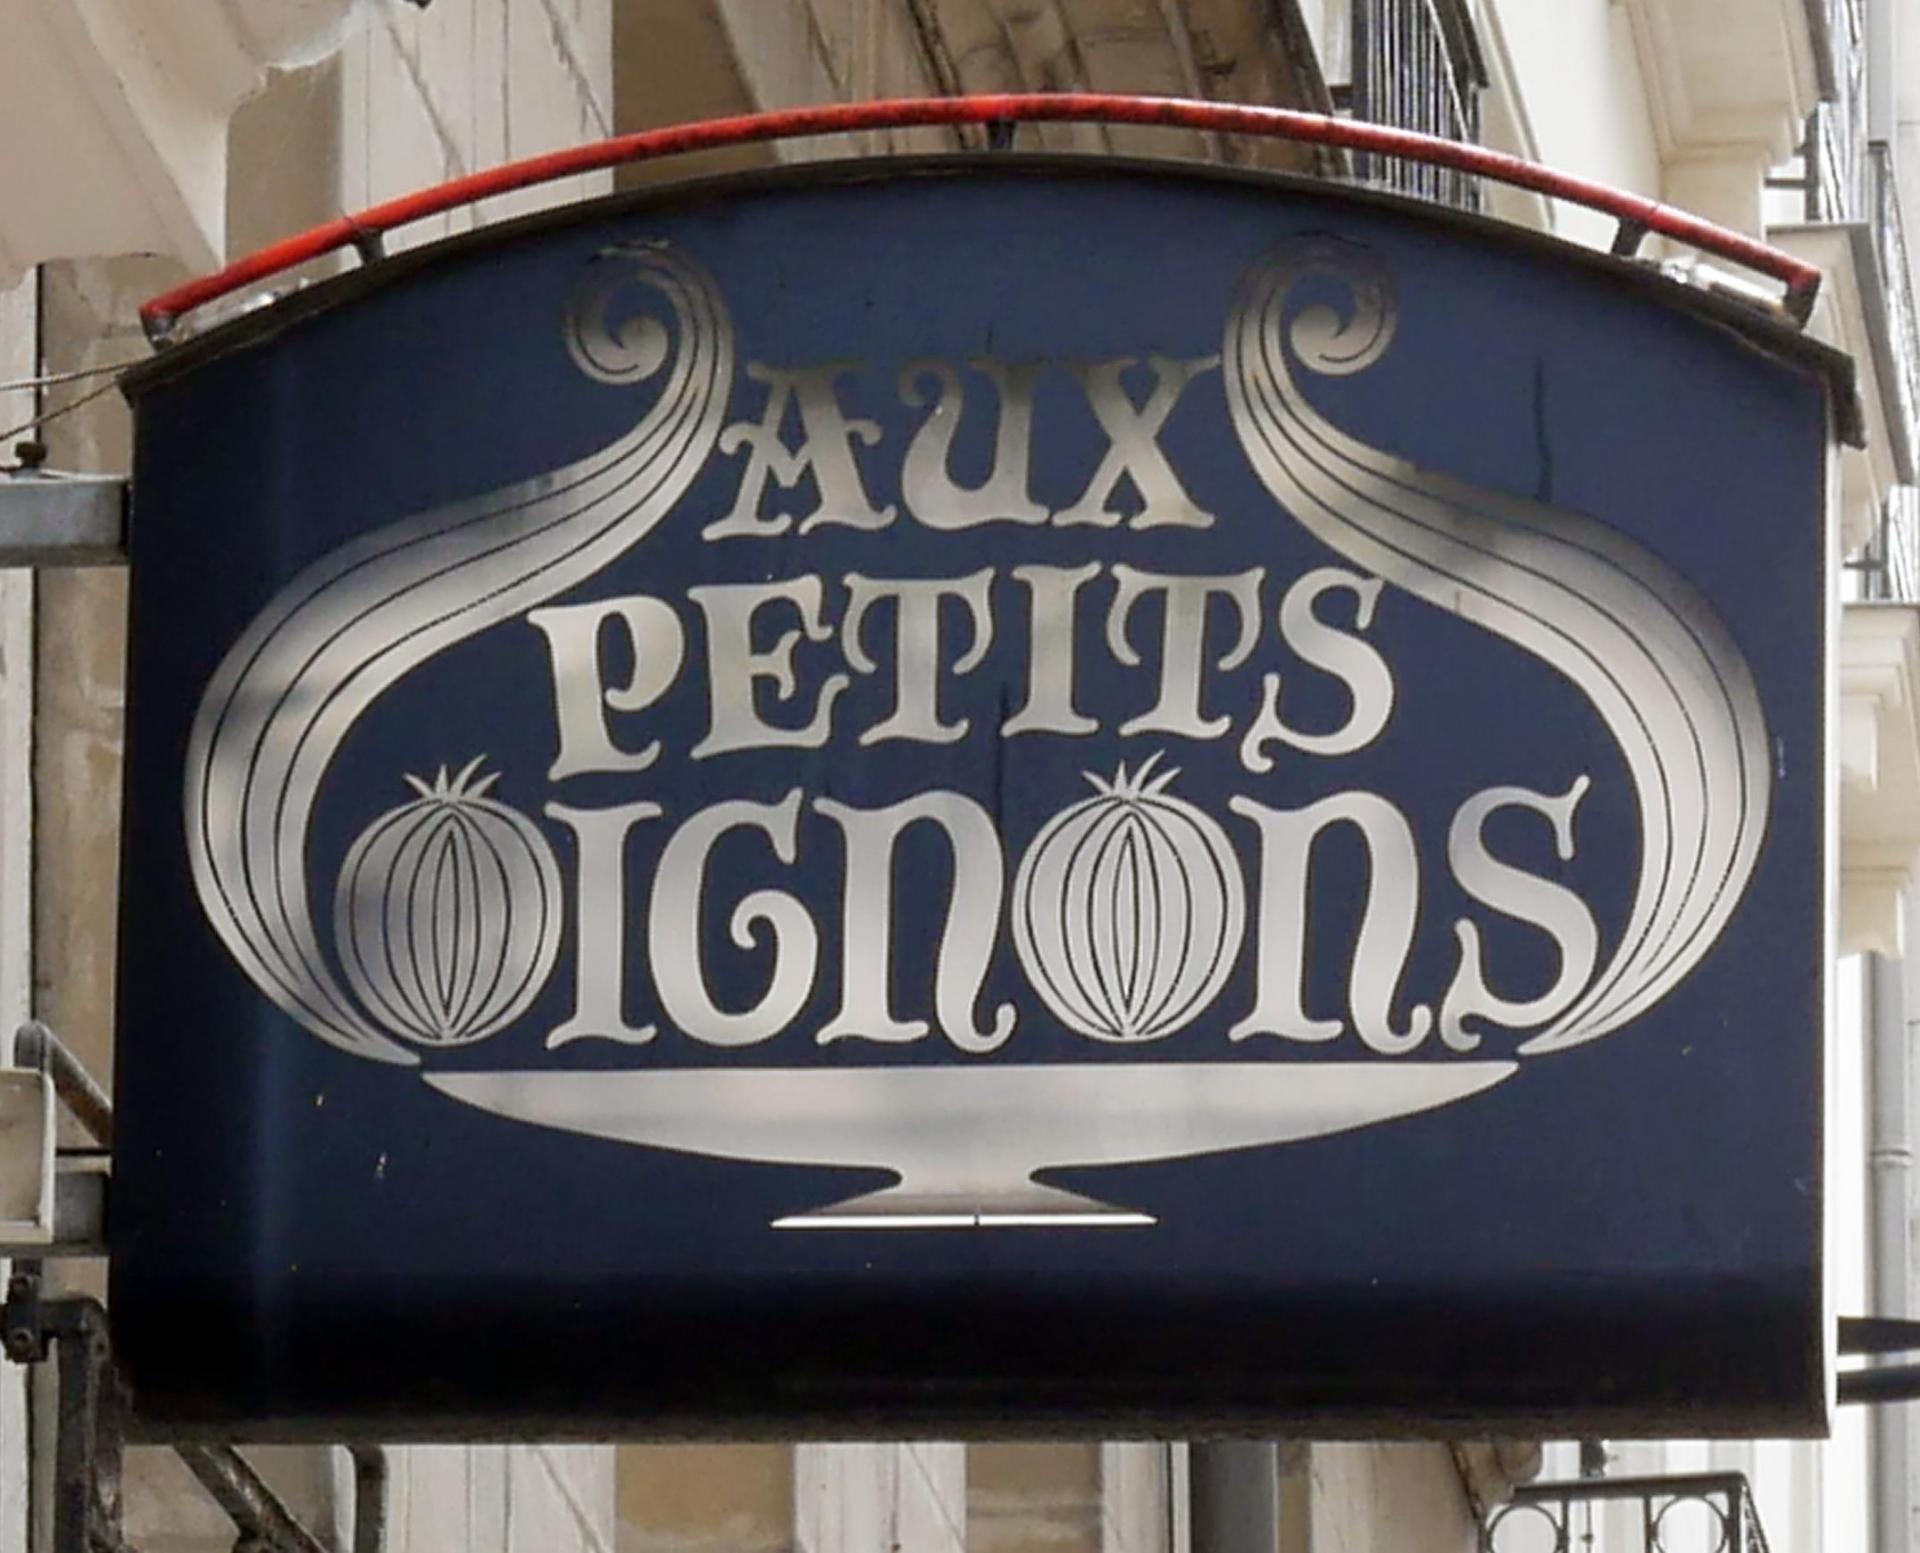 Aux petits oignons (restaurant) - Nantes